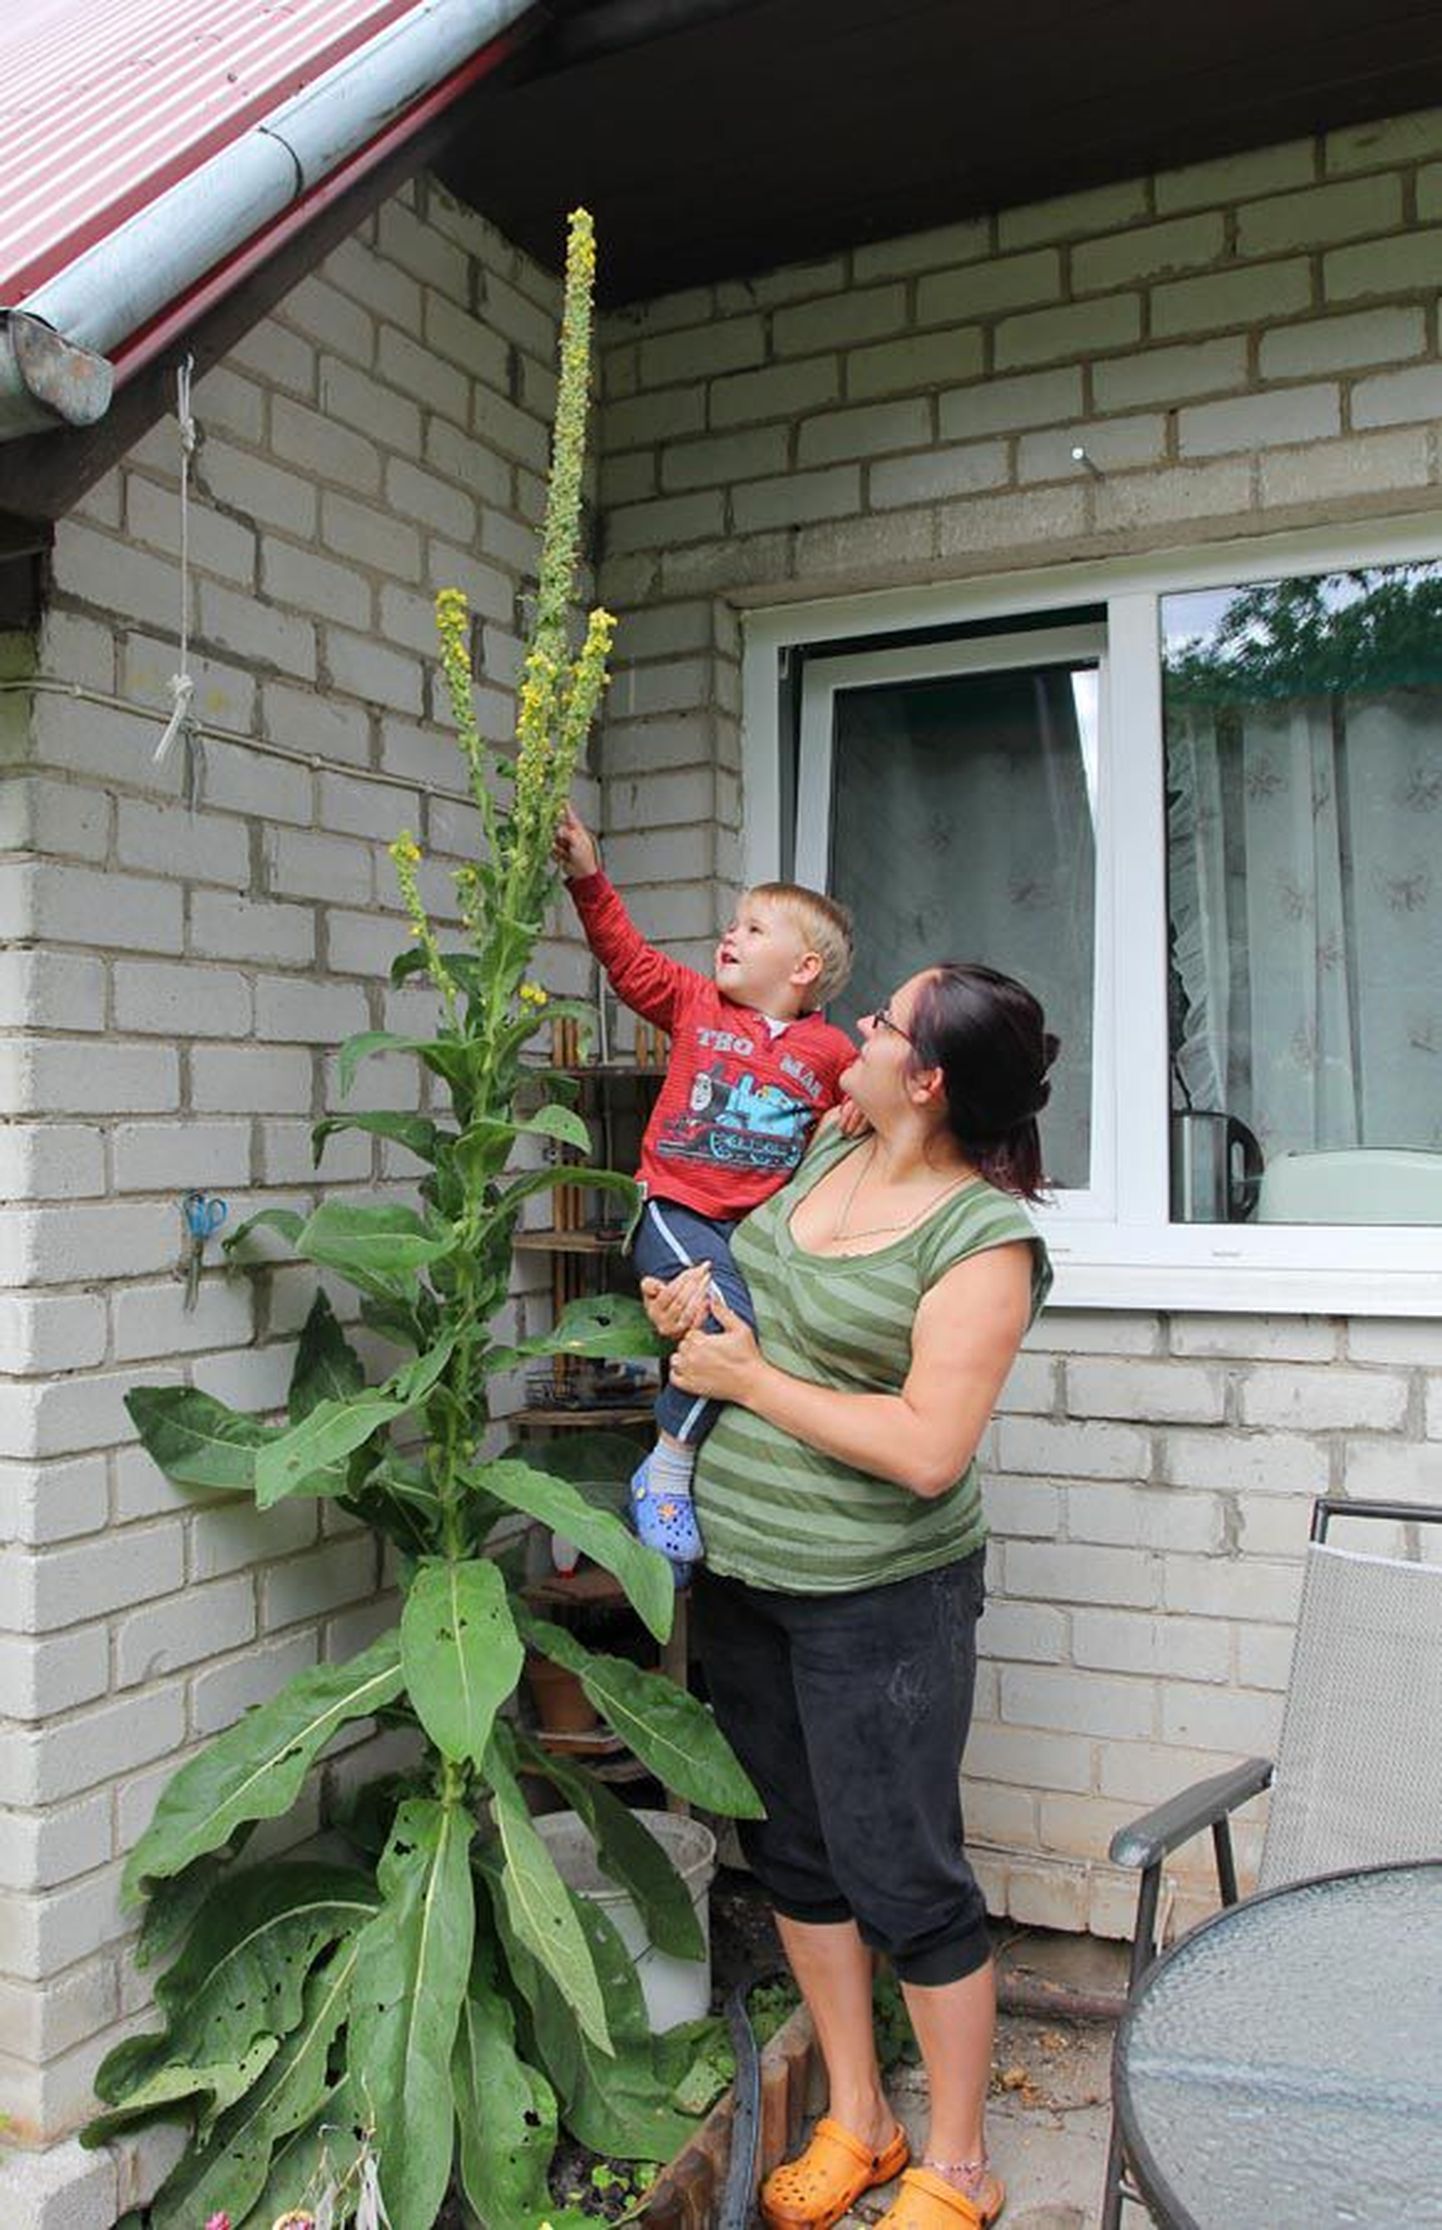 Kristi Villem ning tema kahe ja poole aastane poeg Romet on aeda sattunud taime üle väga õnnelikud.